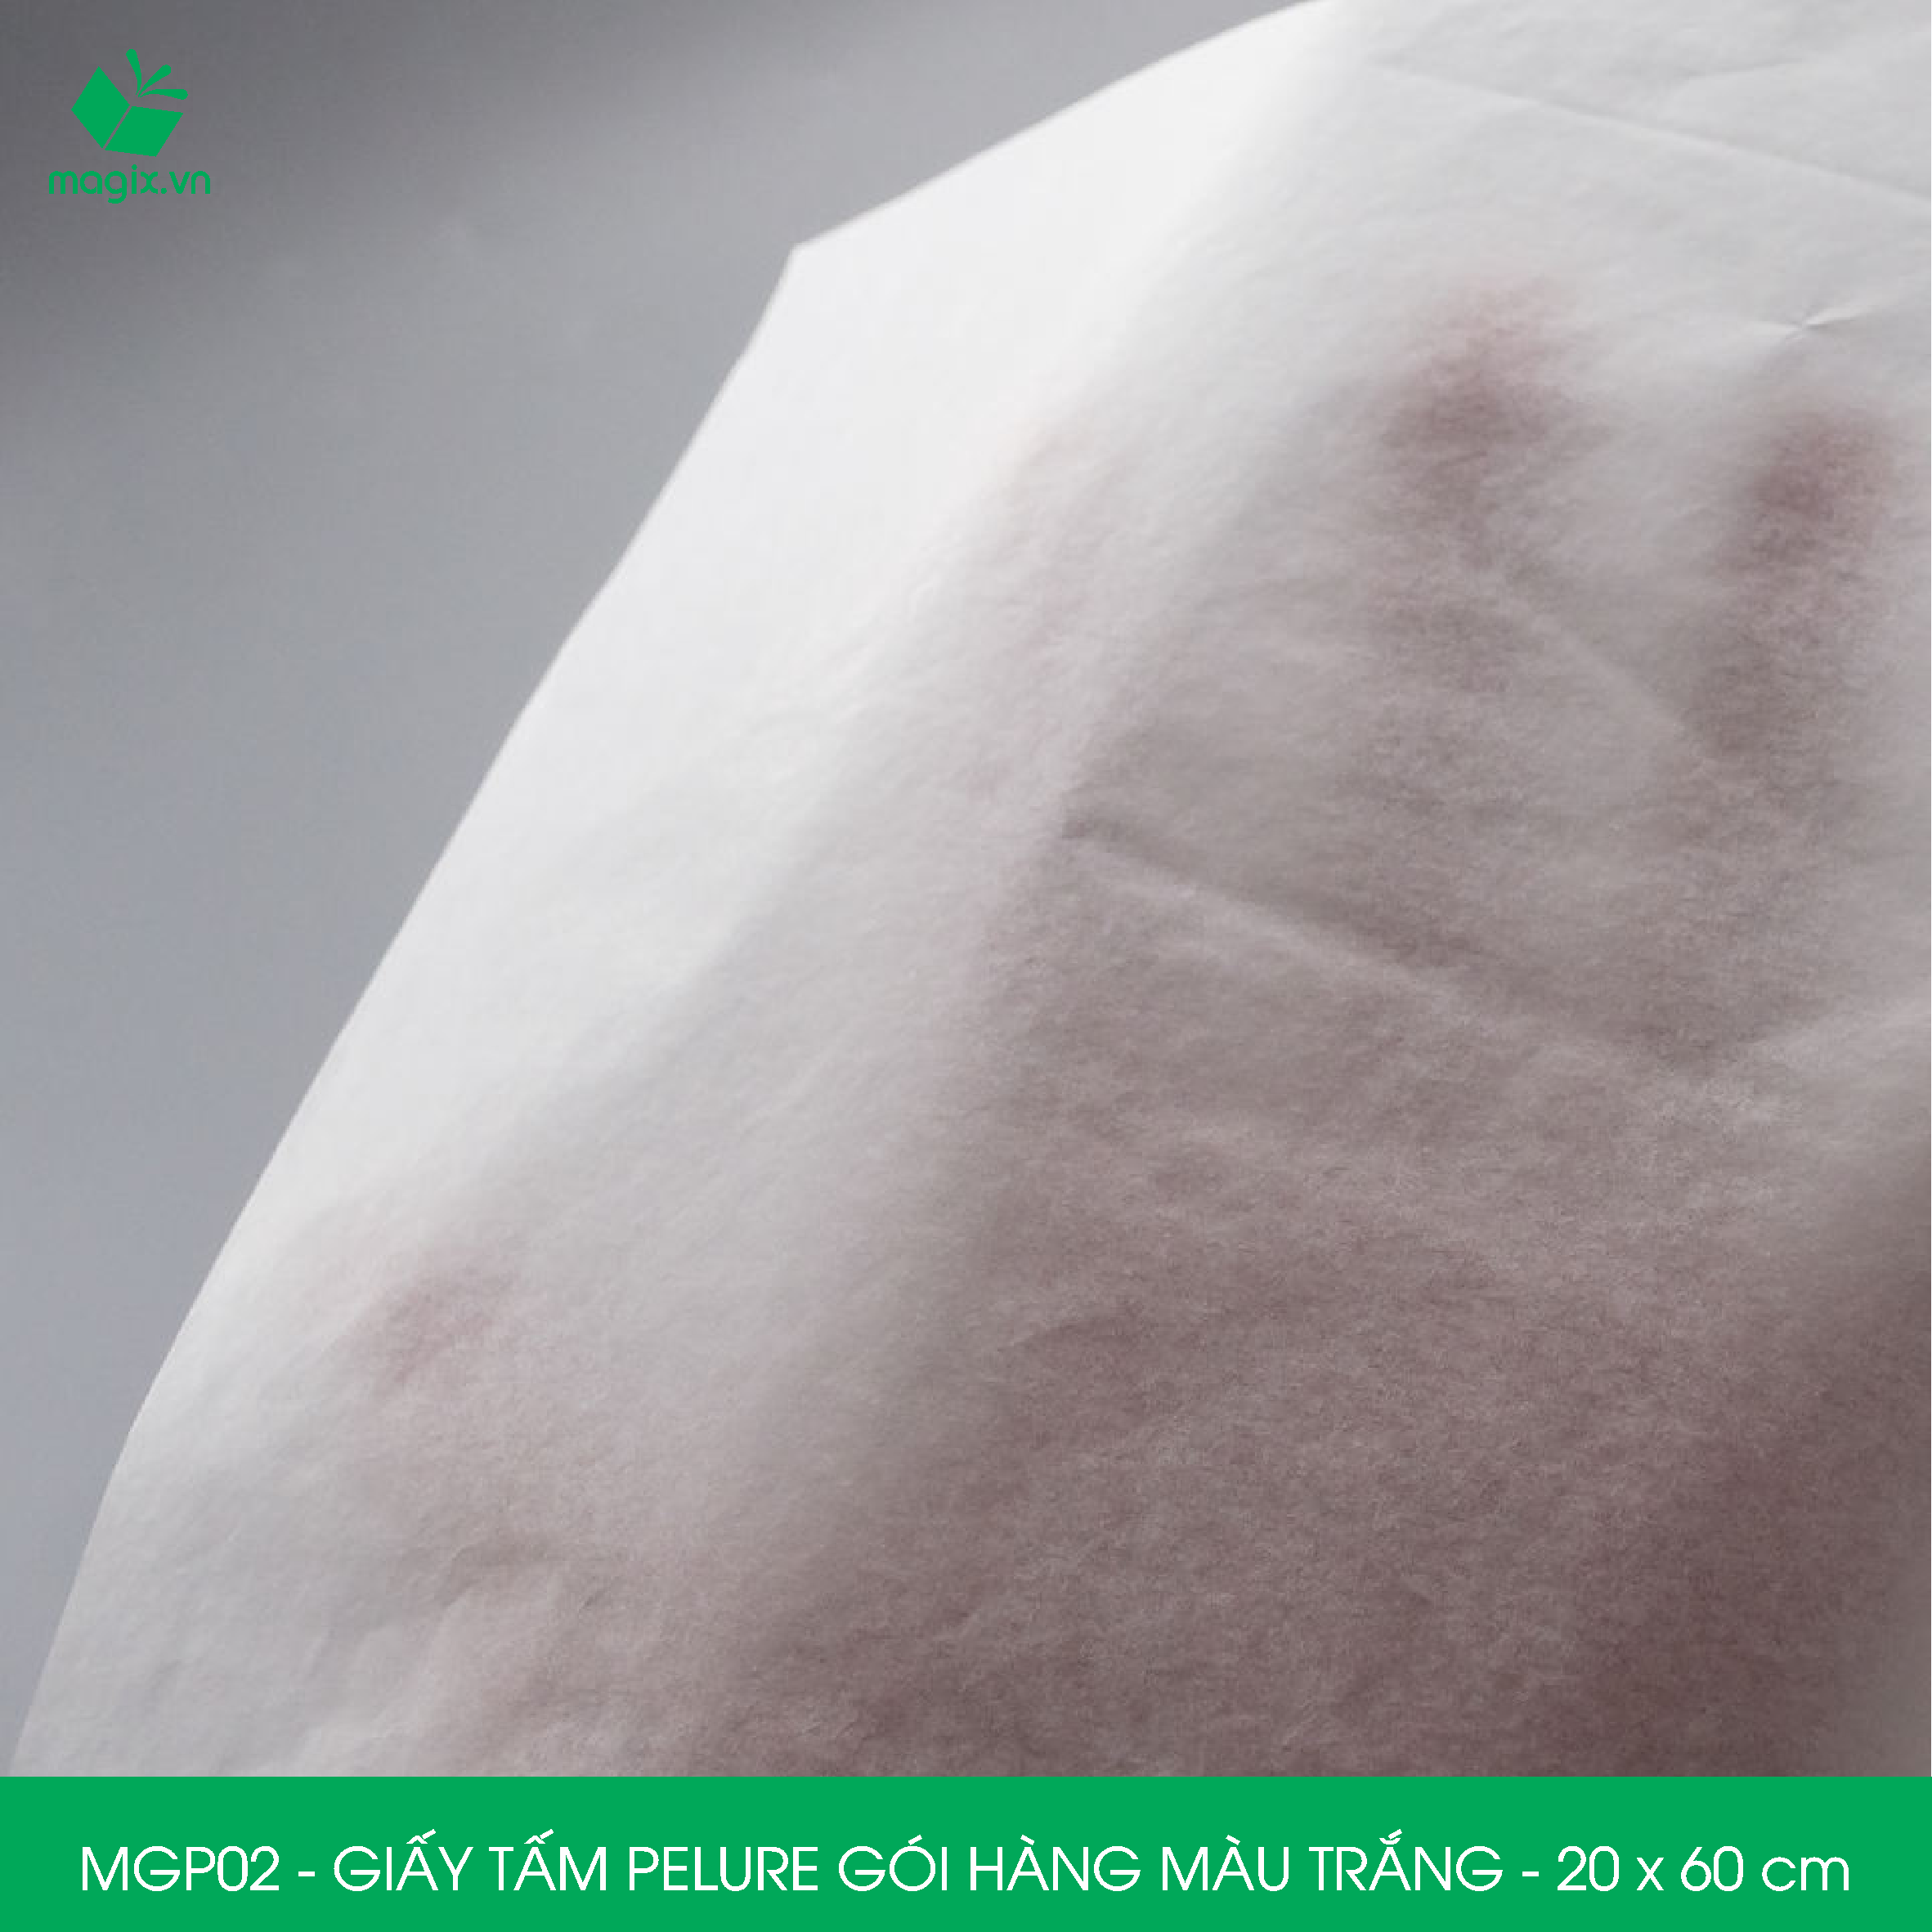 MGP02 - 20x60 cm - 1000 tấm giấy Pelure trắng gói hàng, giấy chống ẩm 2 mặt mịn, giấy bọc hàng thời trang